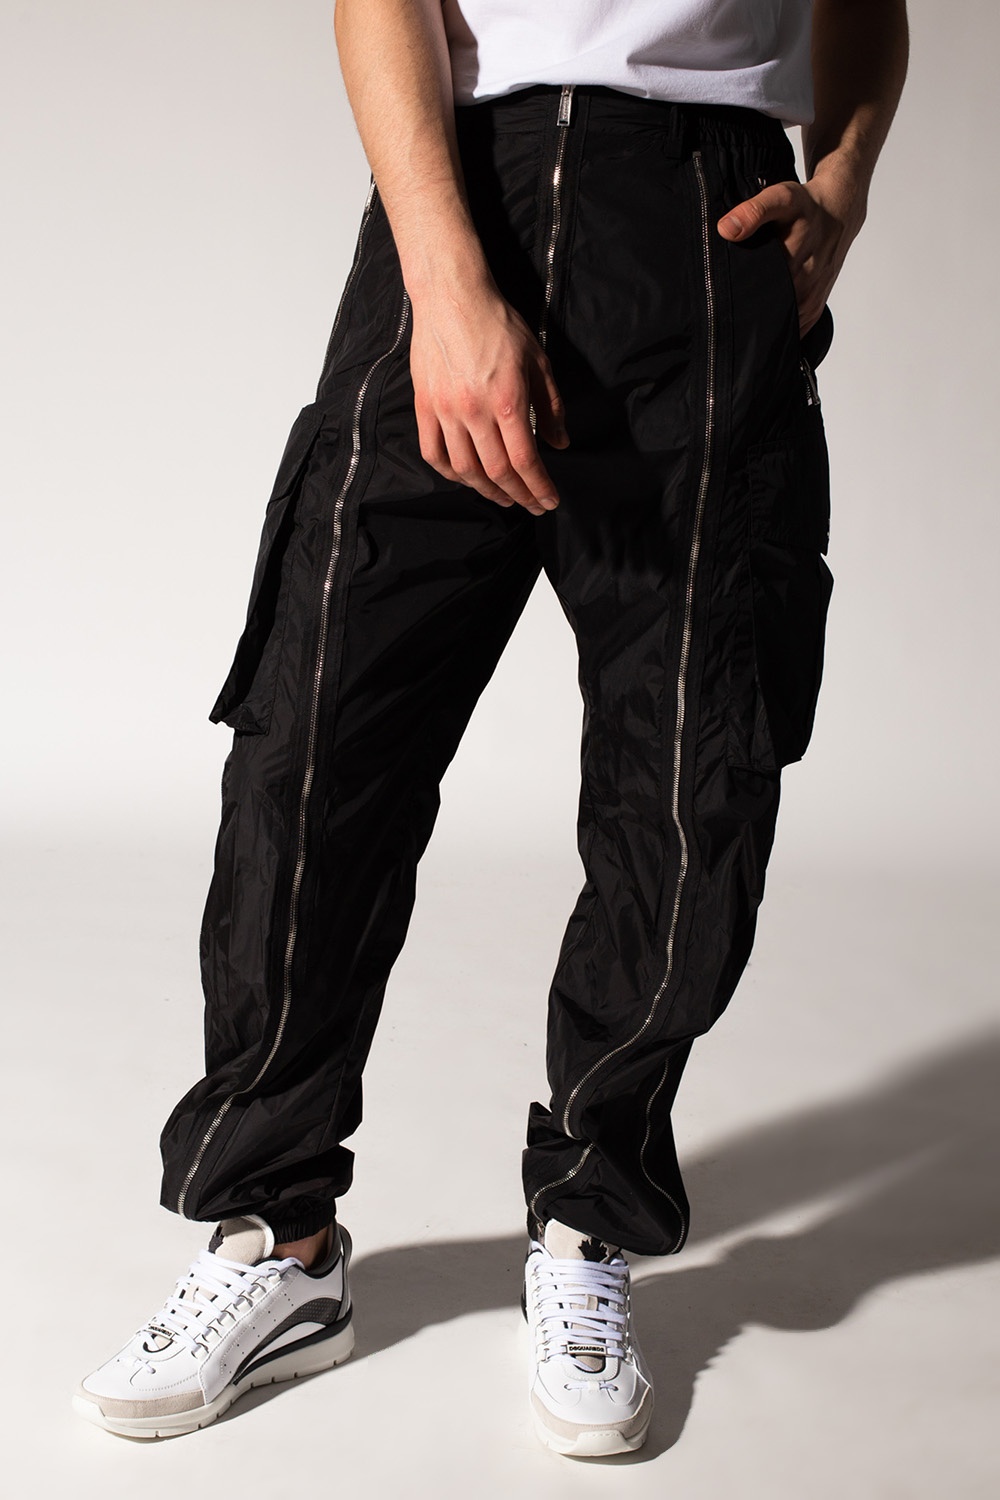 Jordyn Woods: Embellished Hoodie and Sweatpants